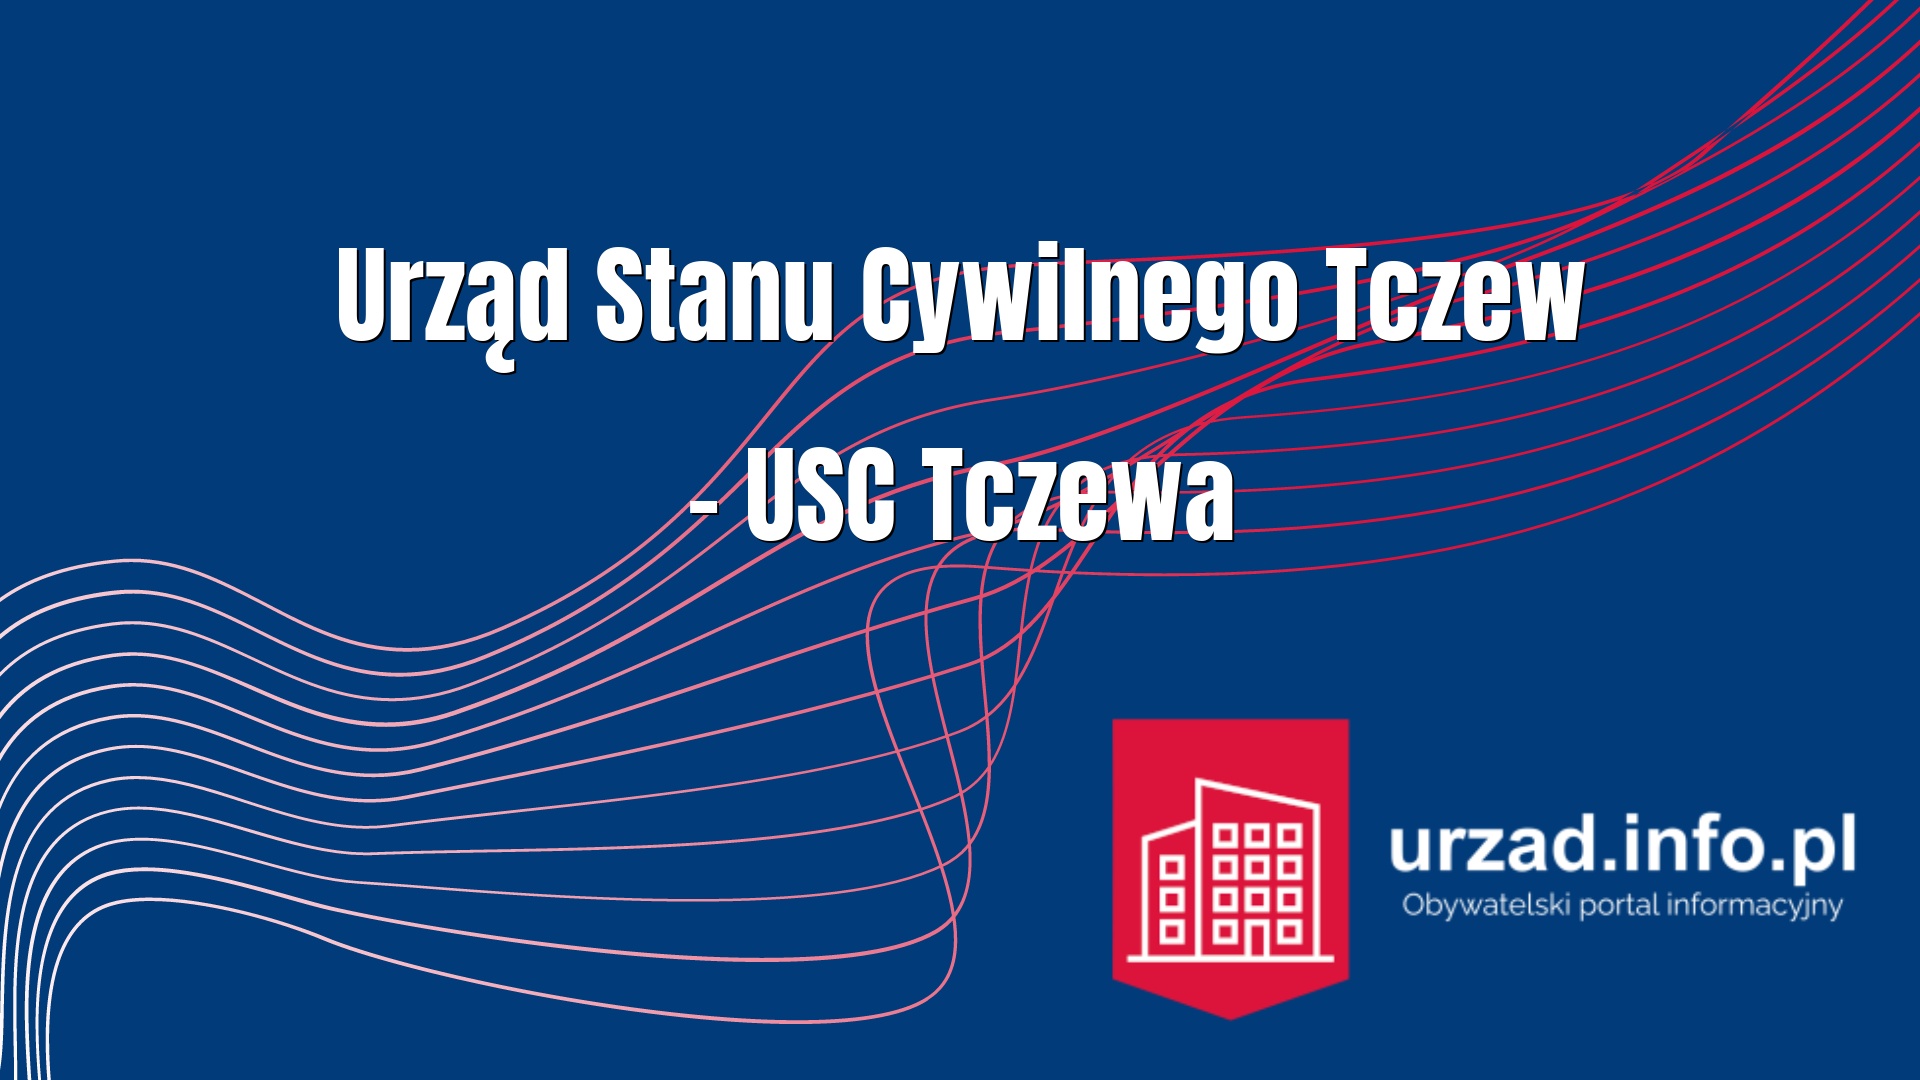 Urząd Stanu Cywilnego Tczew – USC Tczewa